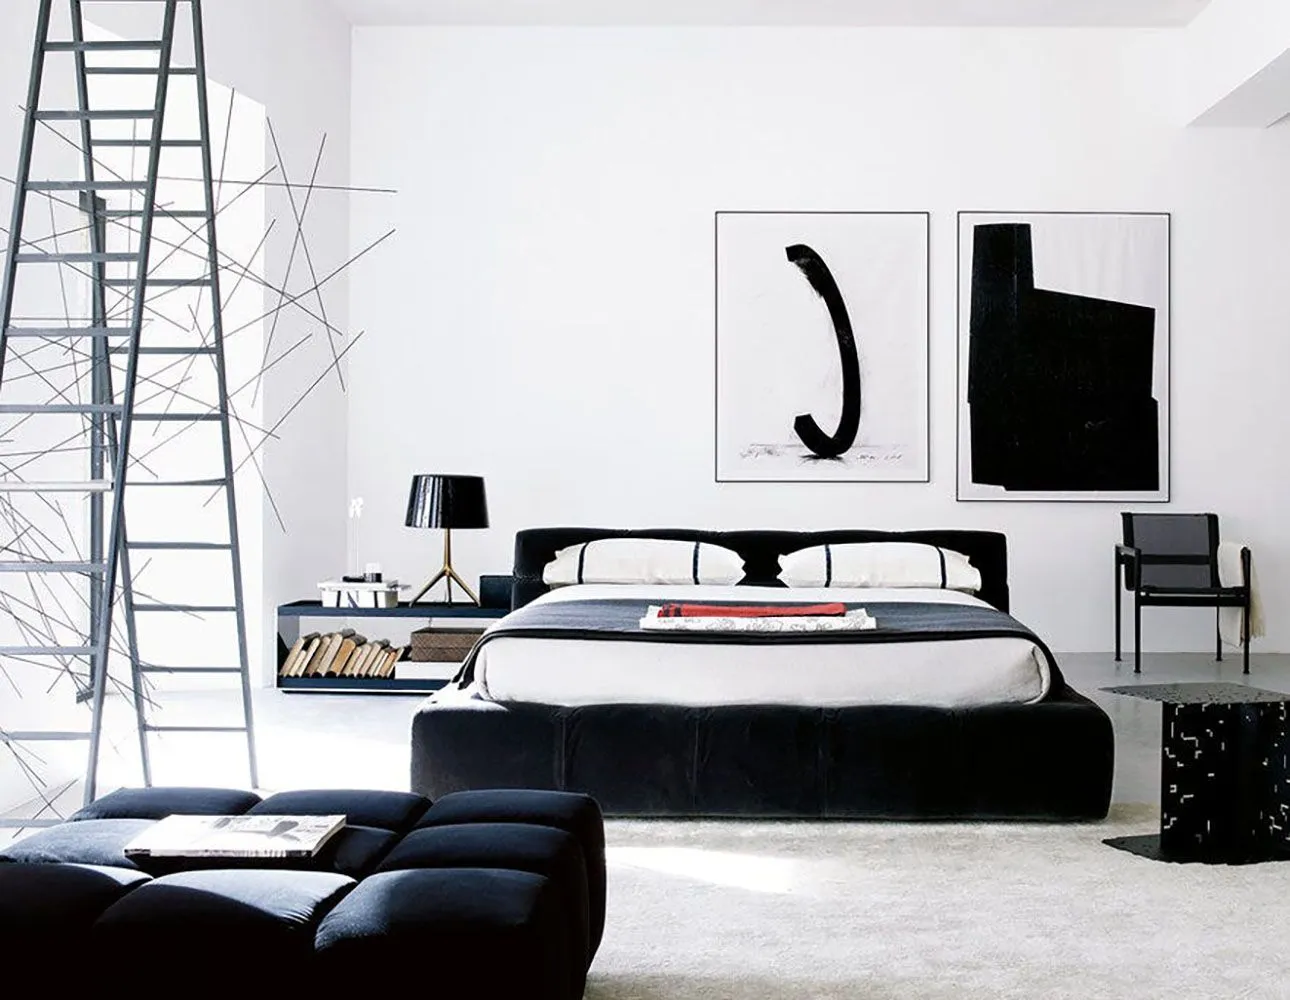 Кровать Tufty-Bed (ширина спального места 160) -итальянских и ведущих мировых брендов в Москве